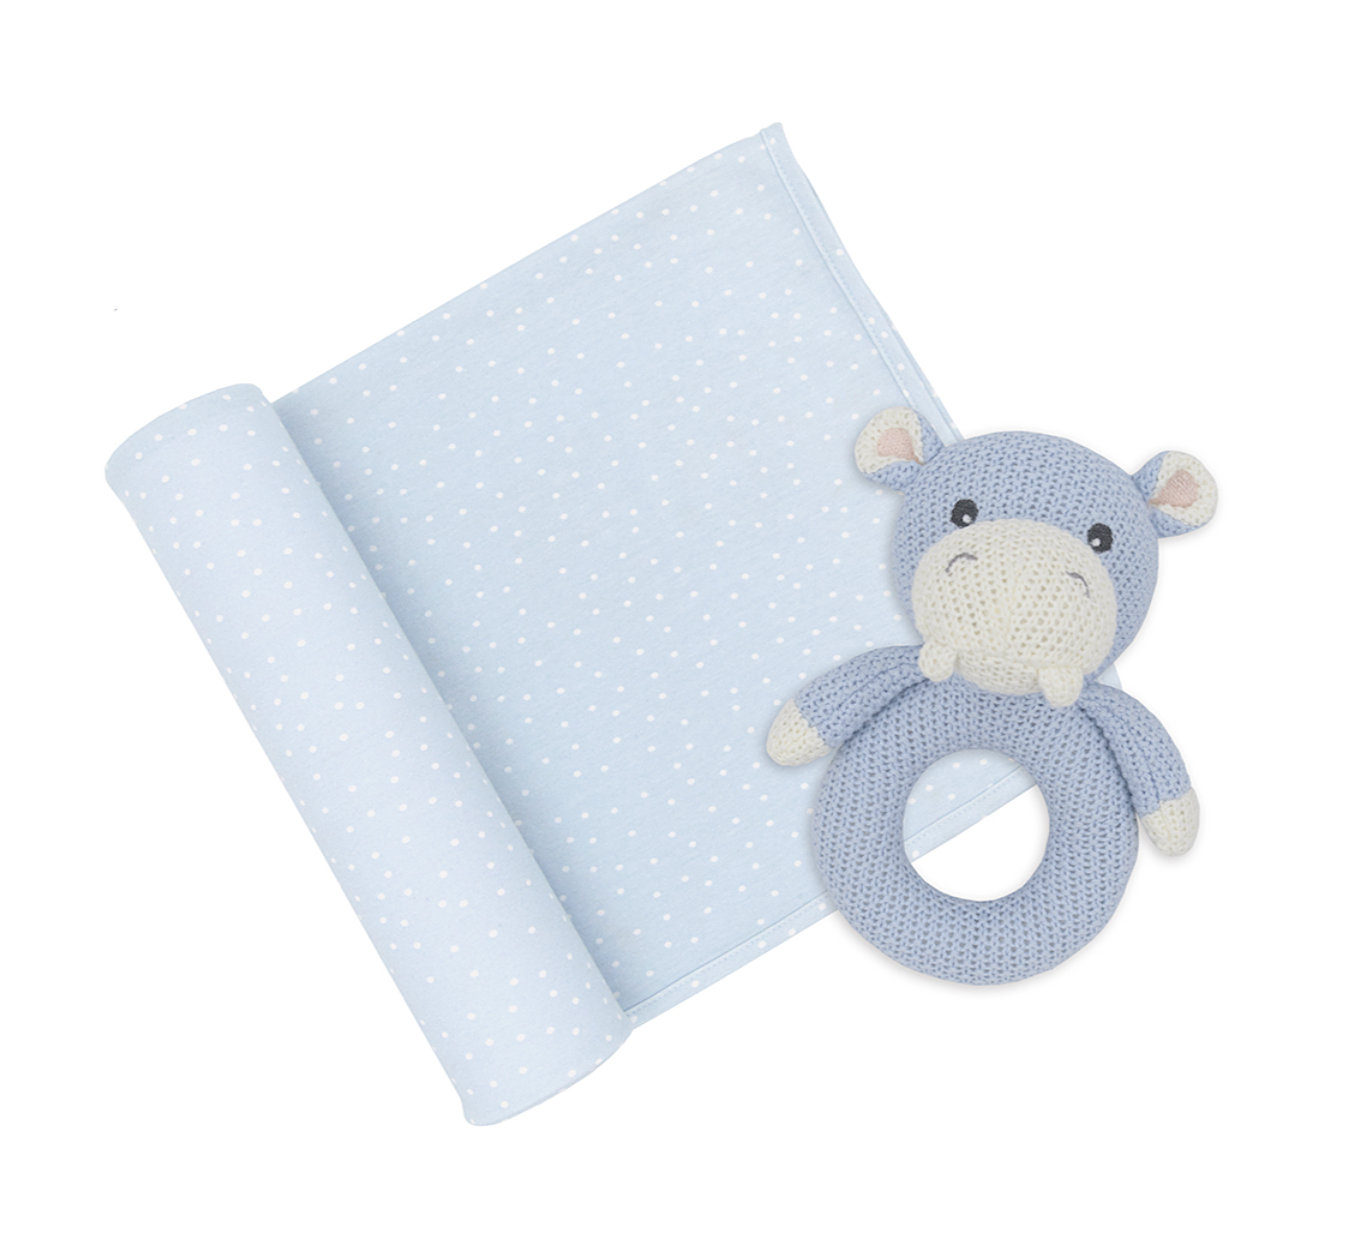 Confetti/Hippo Gift Set